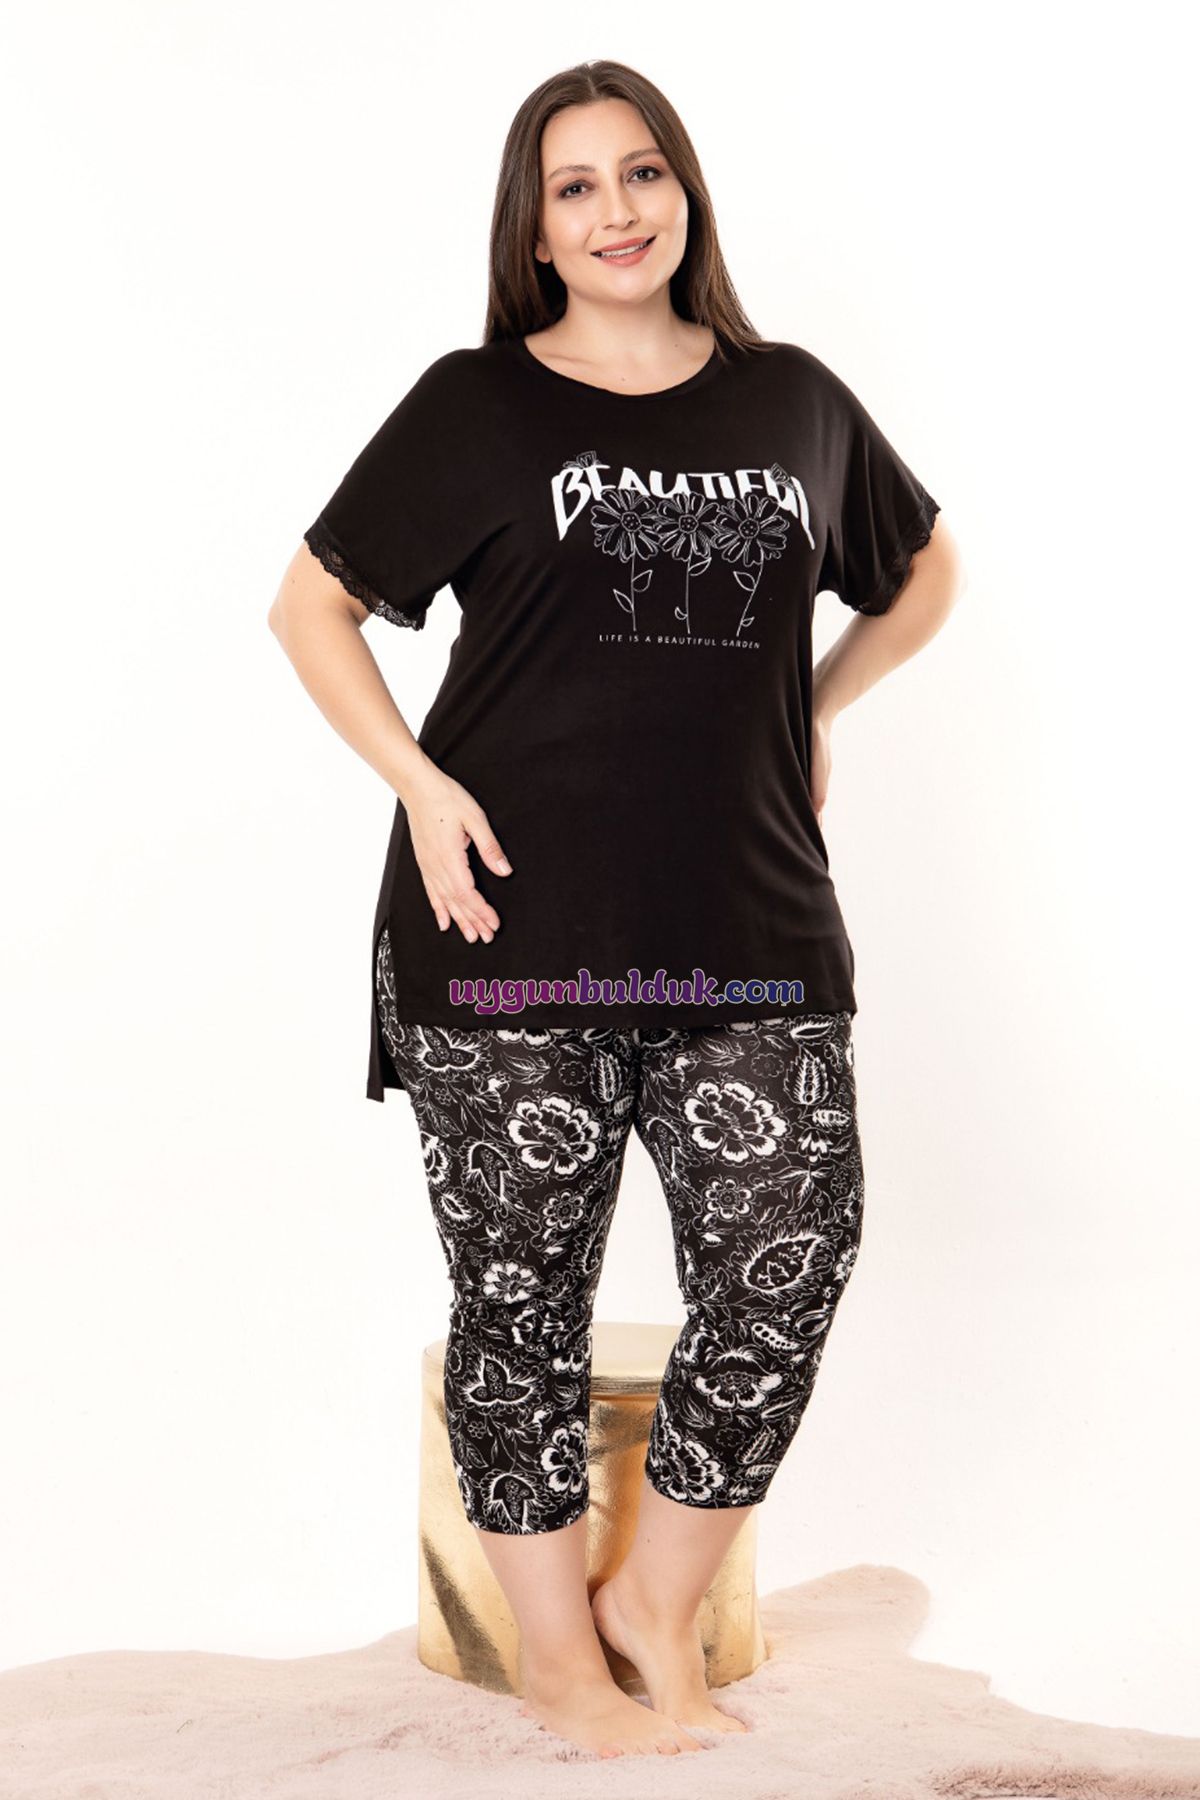 UygunBulduk Siyah Renk ve Çiçek Desenli Lady 10697 Kadın Büyük Beden Kapri Pijama Takımı